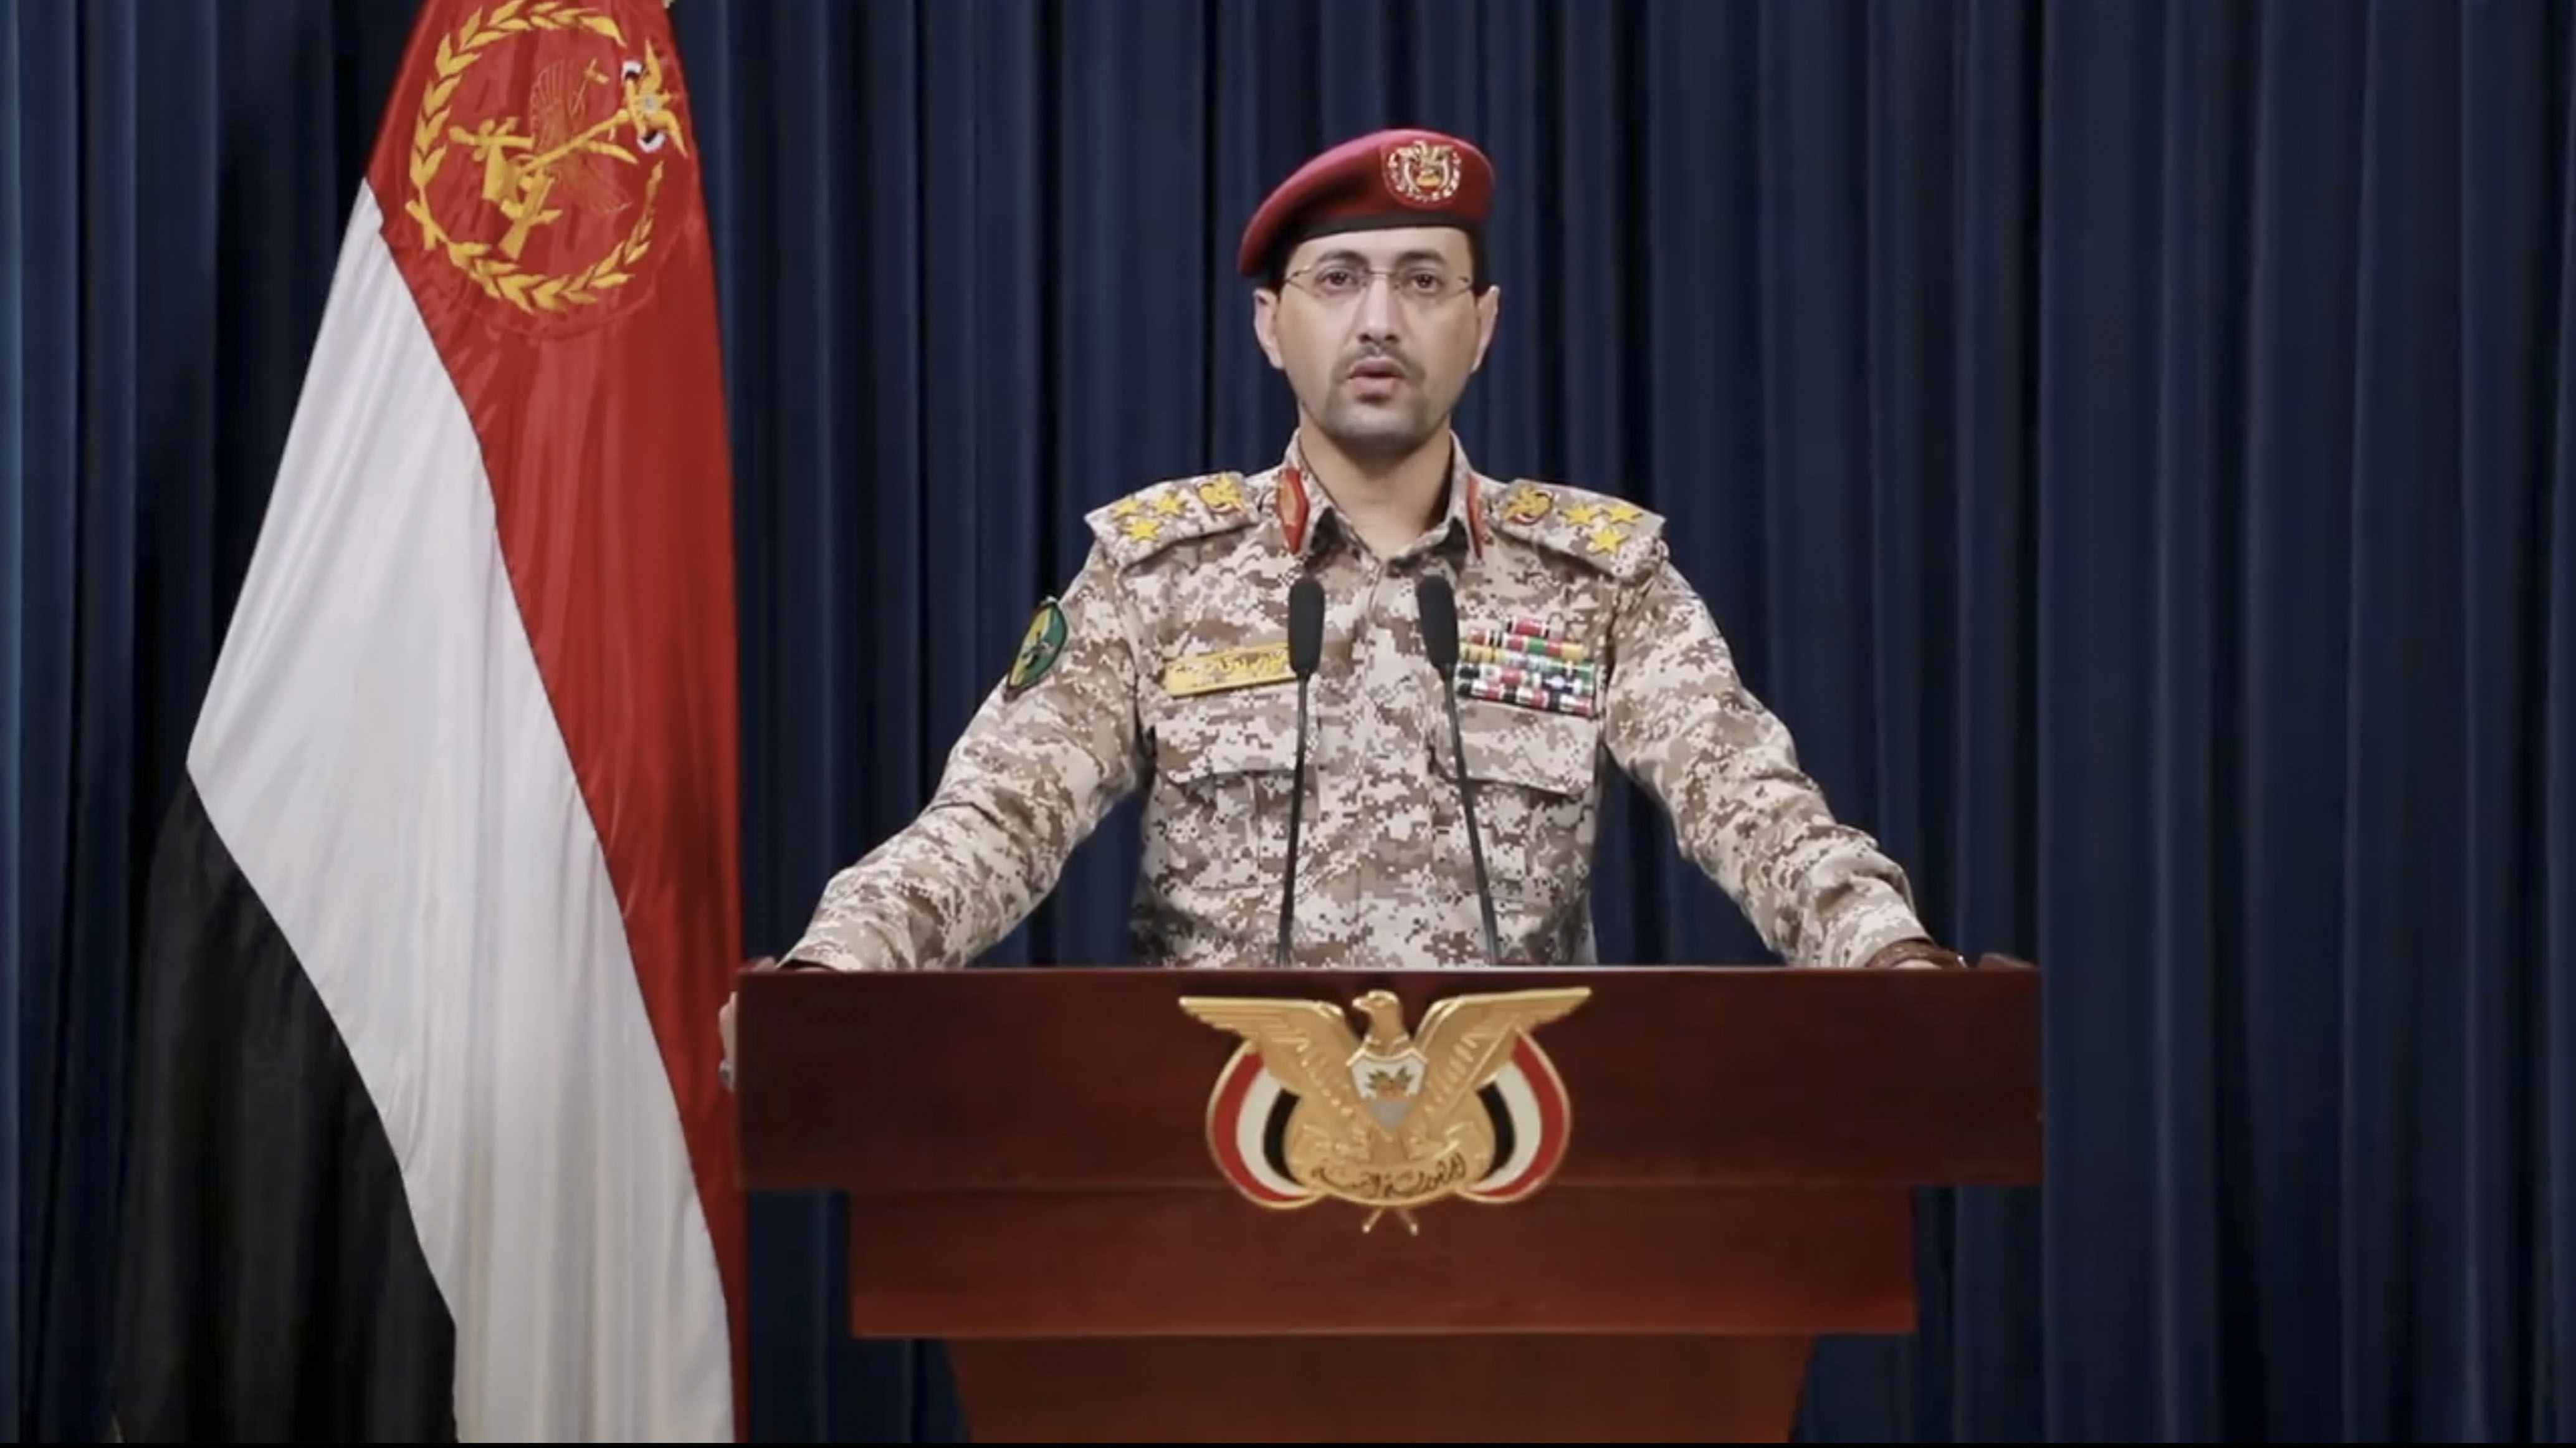 Der Sprecher des Houthi-Militärs, Yahya Sarea, gibt in Sanaa, Jemen, eine Erklärung ab